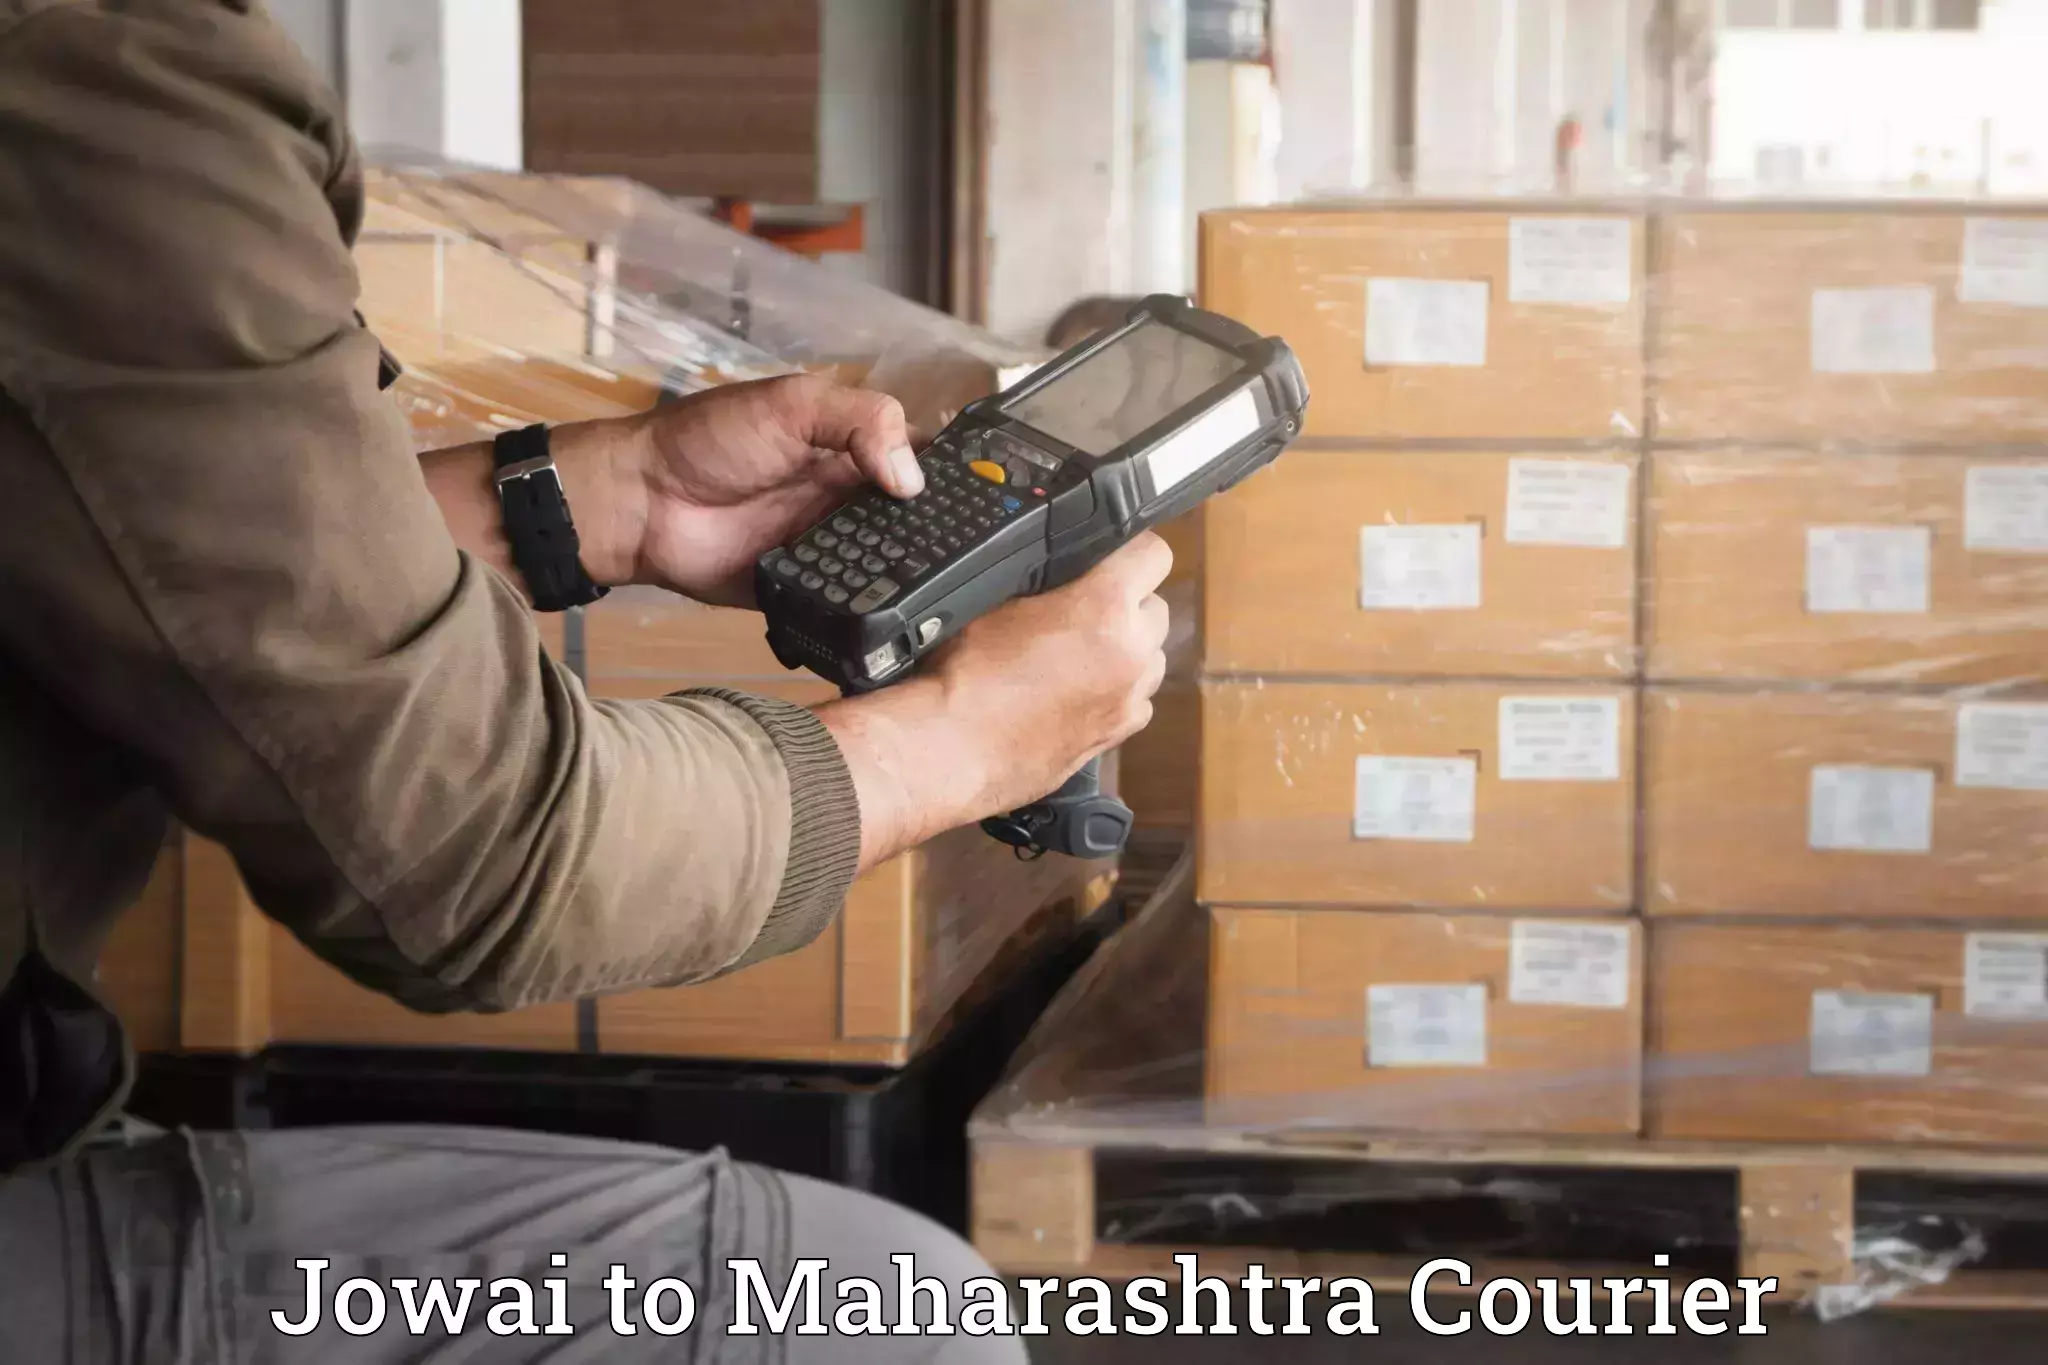 Reliable relocation services Jowai to Maharashtra